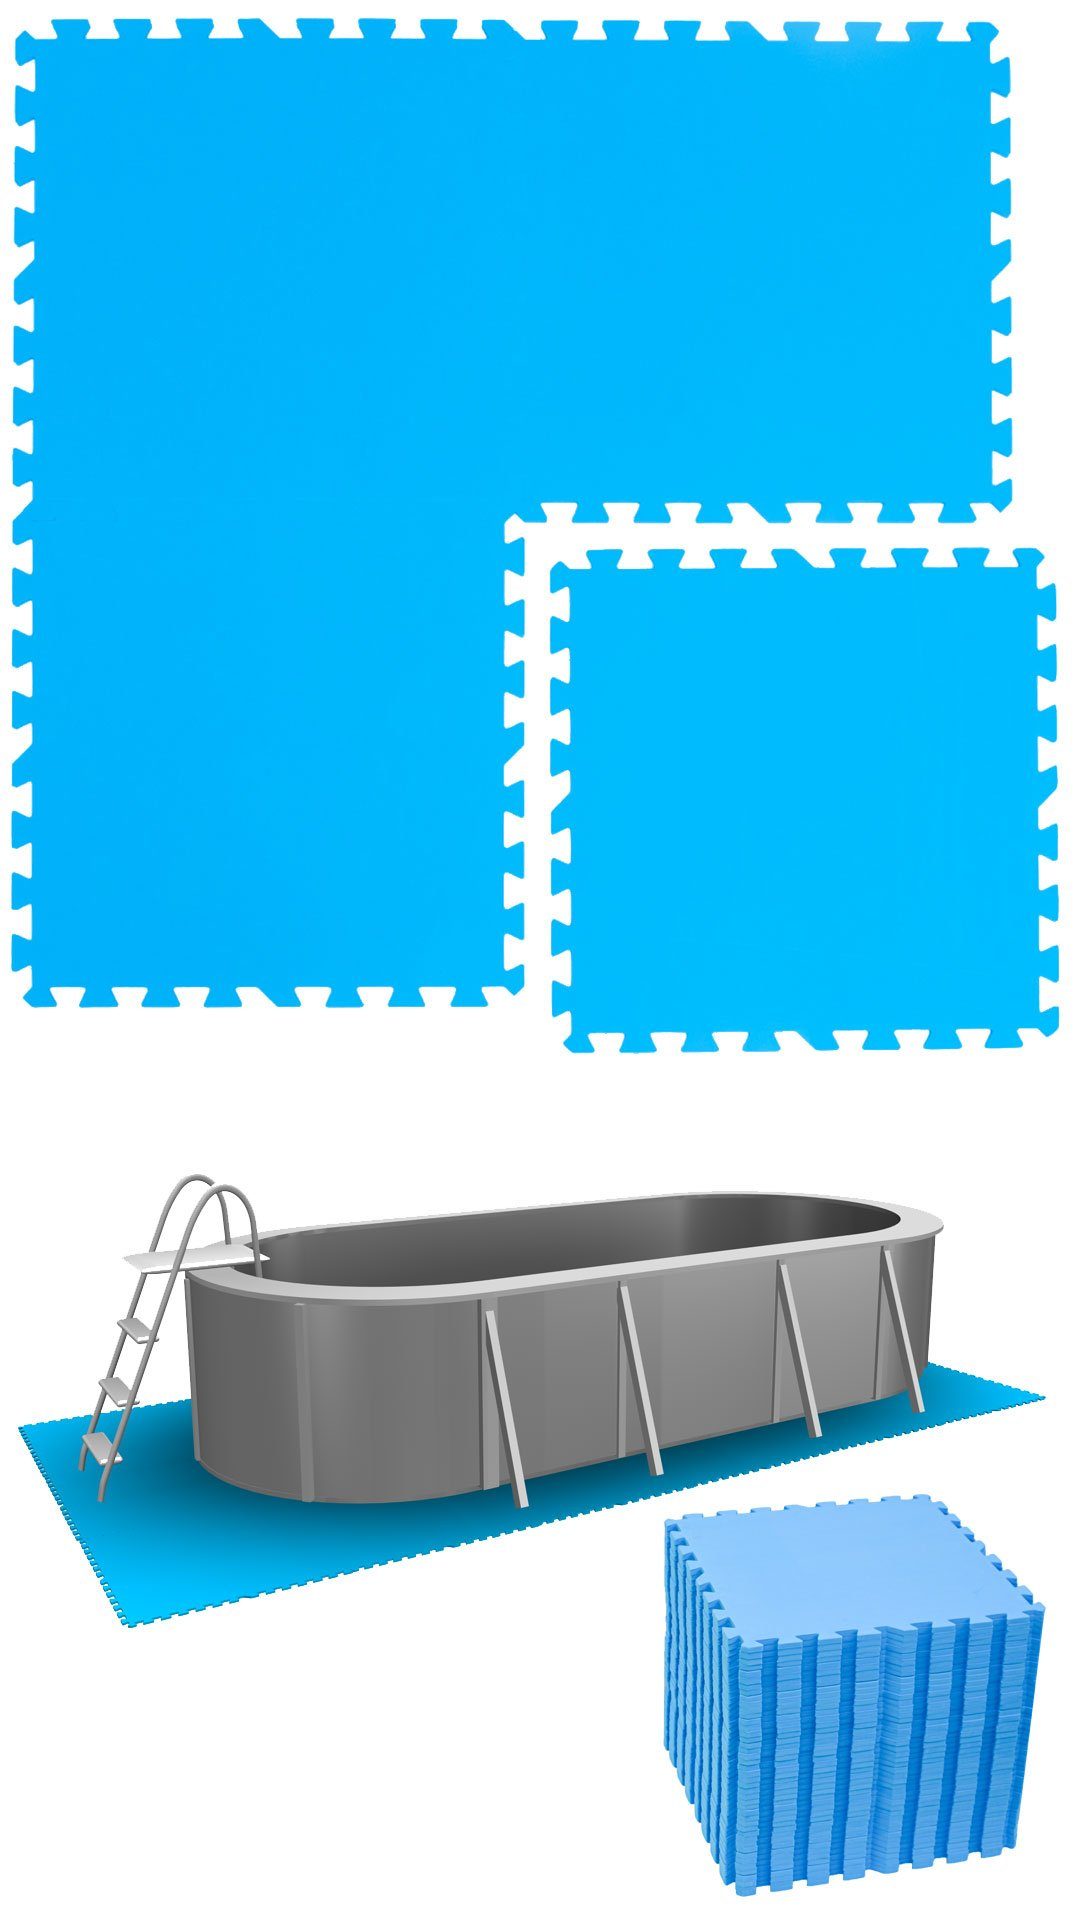 eyepower Bodenmatte 10,3 m² Blau Poolunterlage EVA Pool erweiterbares Set, 44 Stecksystem Matten 50x50